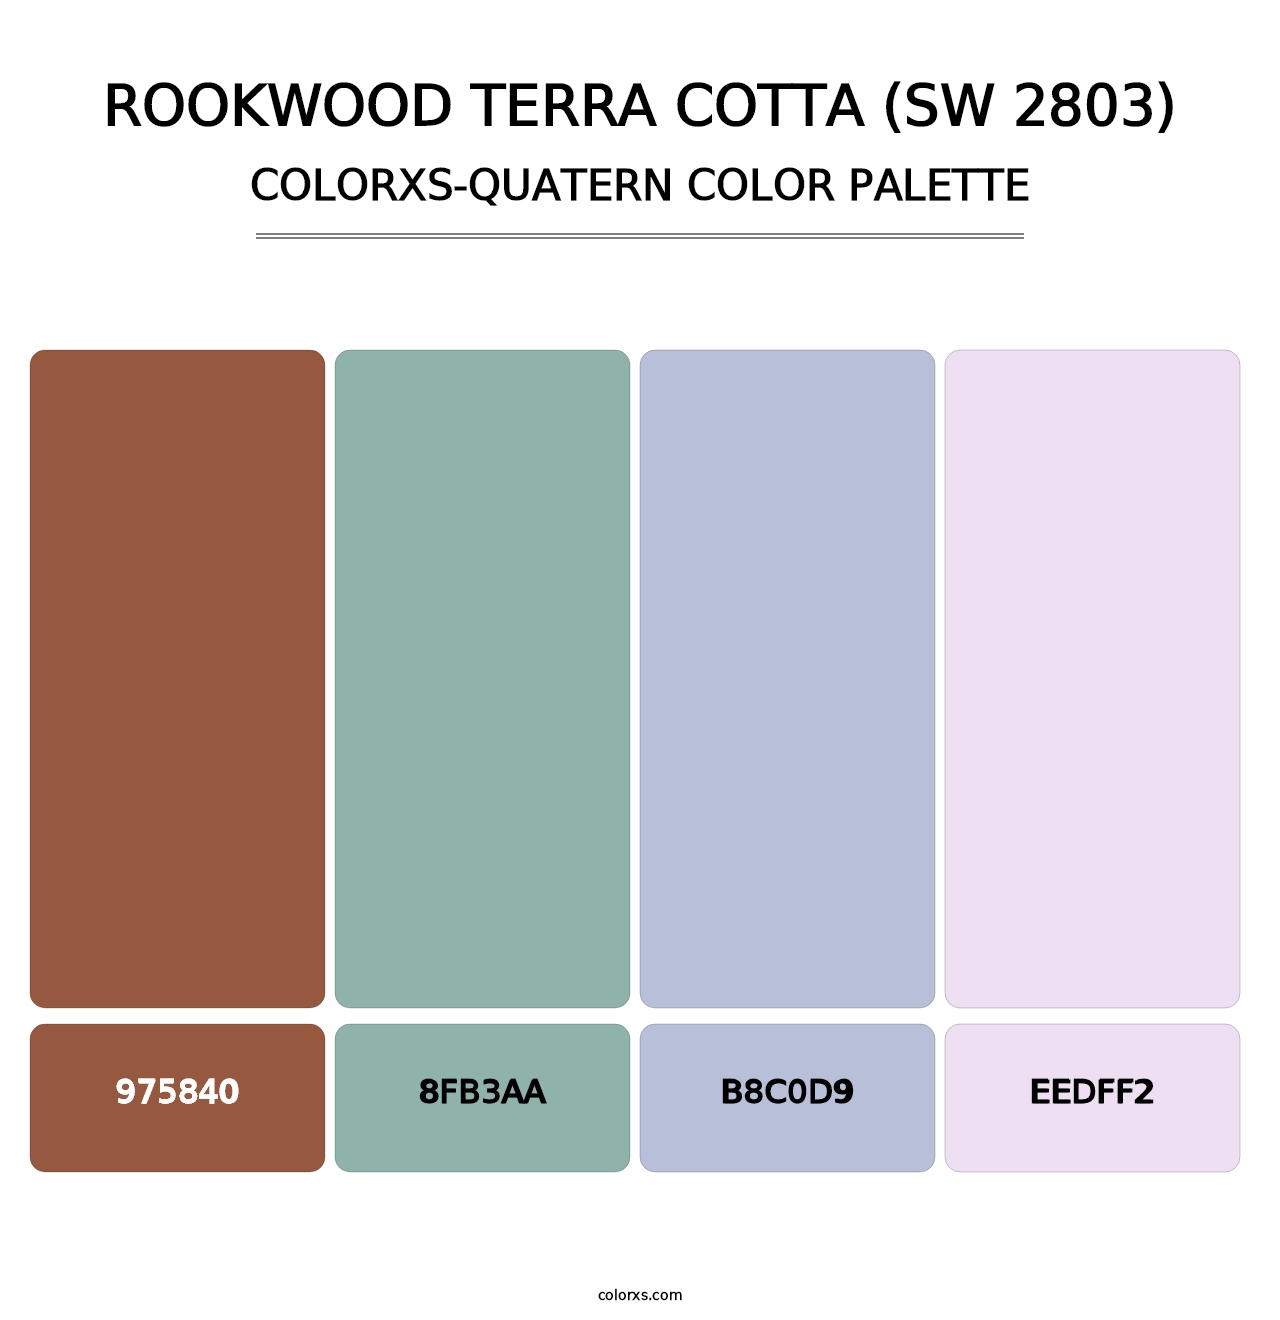 Rookwood Terra Cotta (SW 2803) - Colorxs Quatern Palette